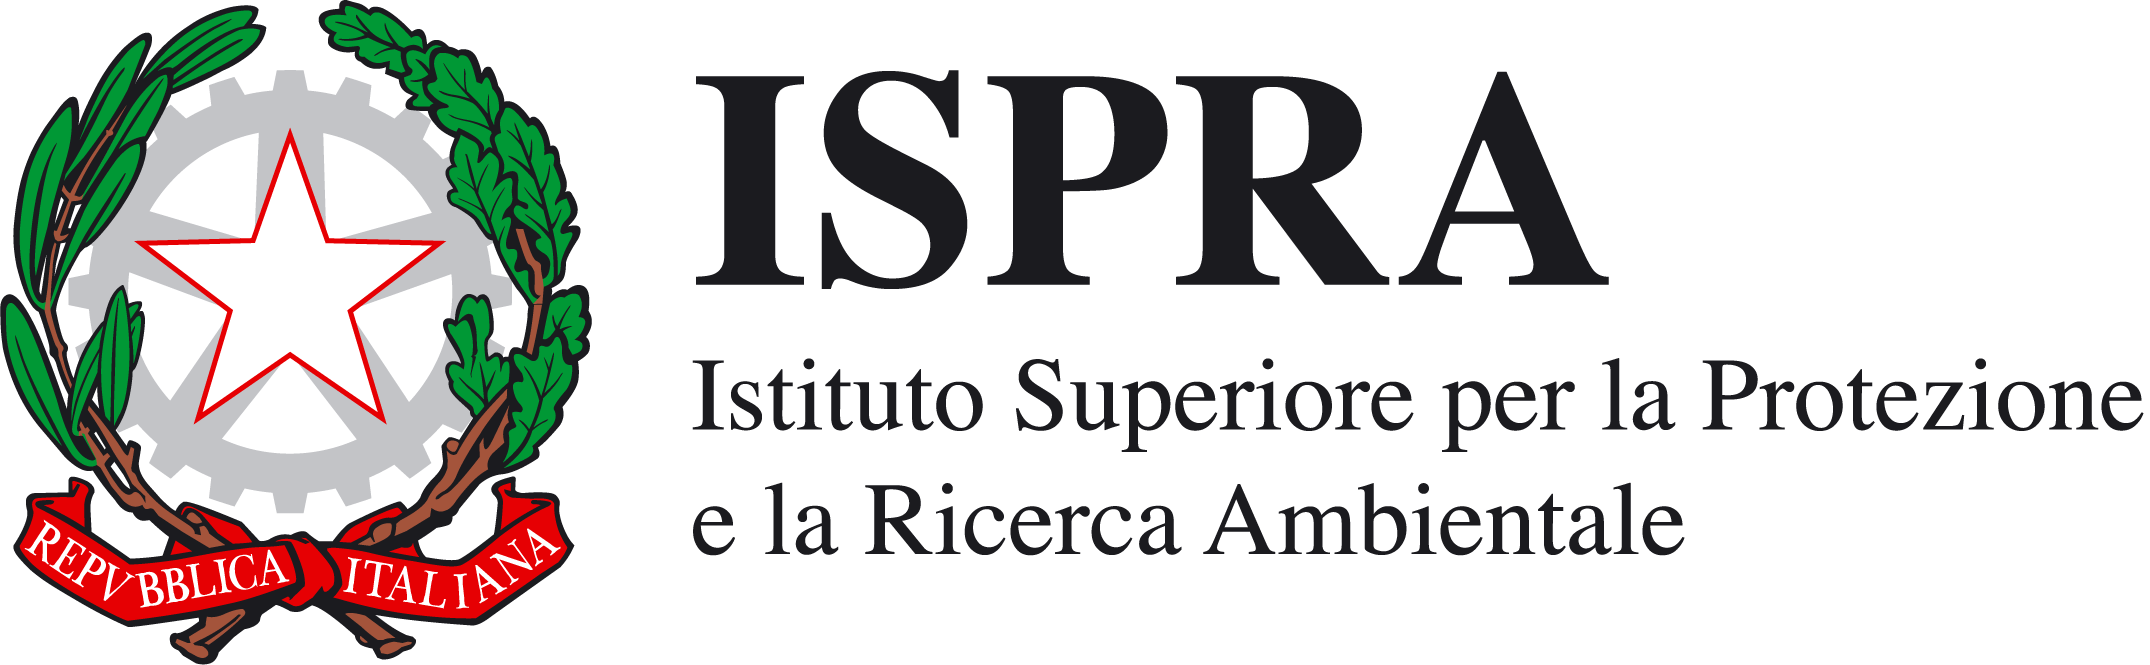 I.S.P.R.A. - Istituto Superiore per la Protezione e la Ricerca Ambientale